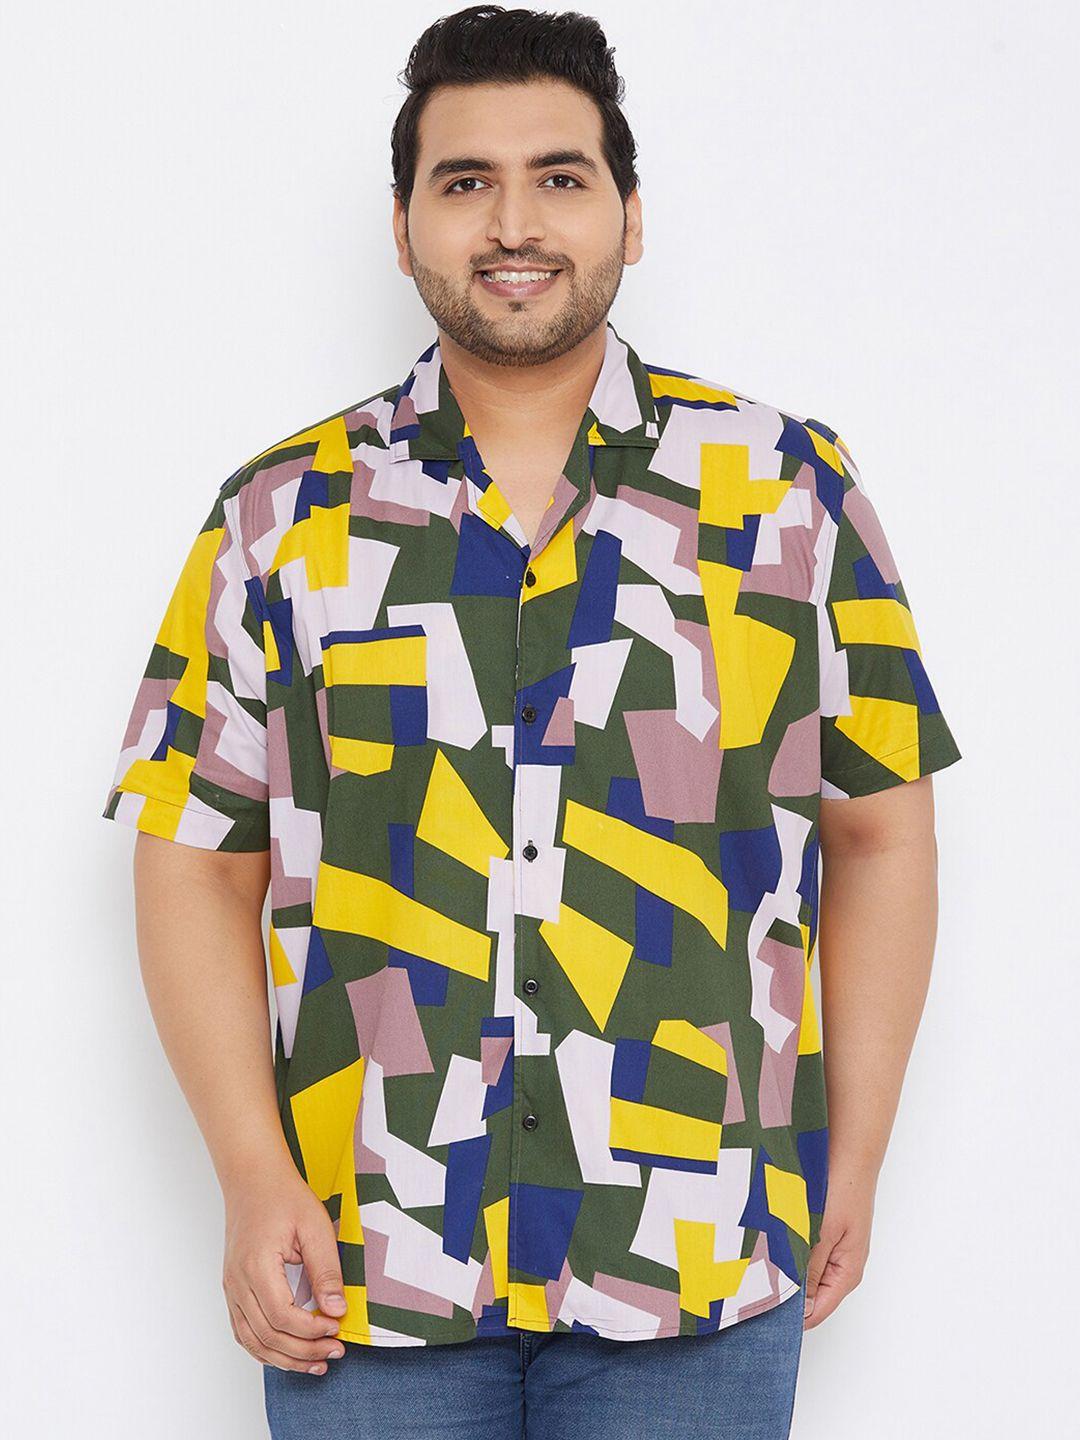 instafab-plus-men-multicoloured-opaque-printed-casual-shirt